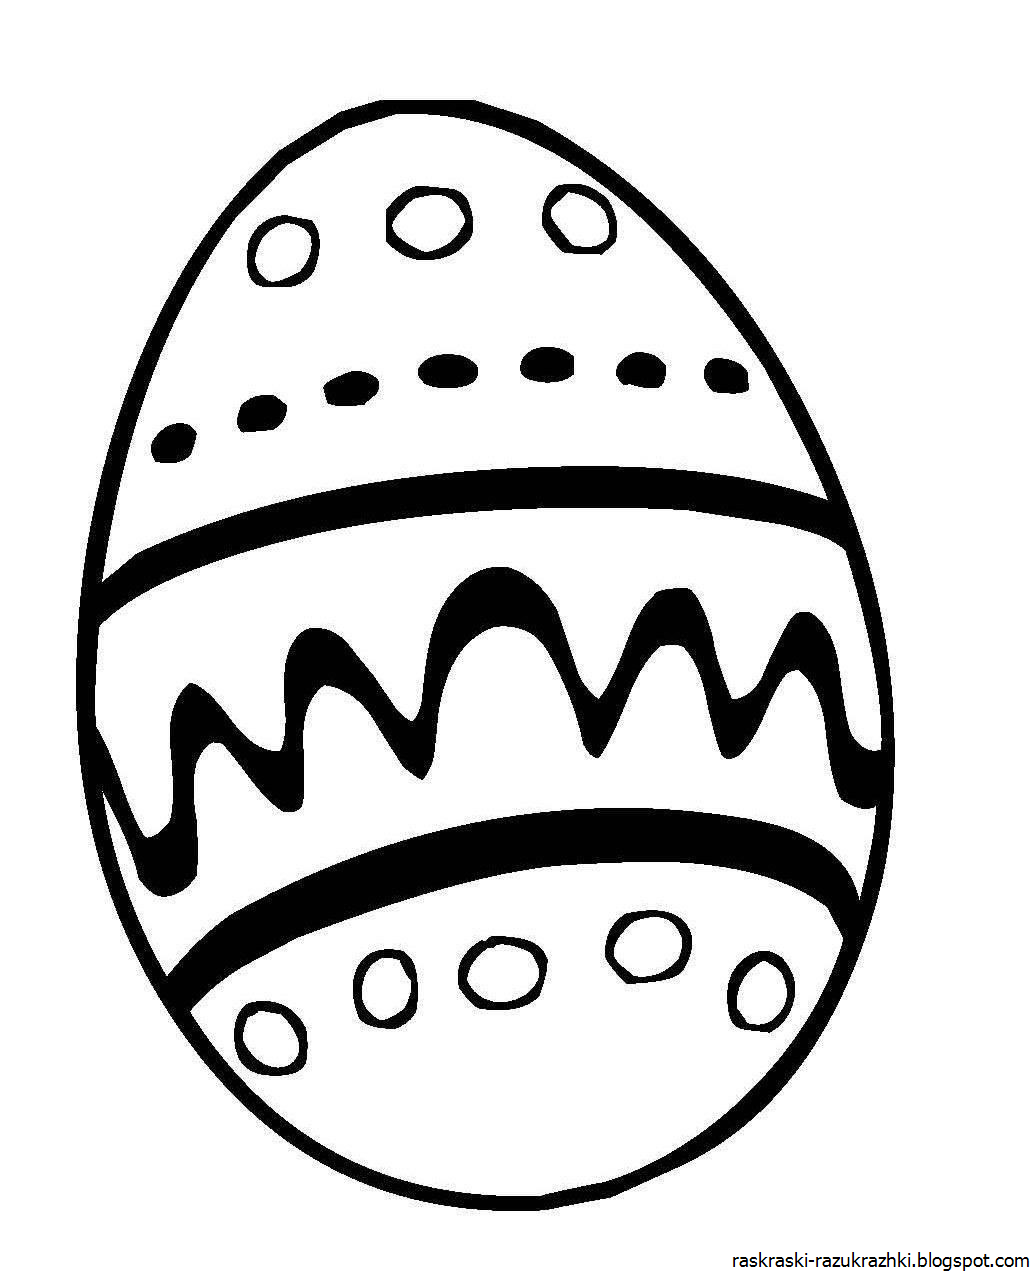 Пасхальное яйцо рисунок для детей. Яйцо раскраска для детей. Пасхальное яйцо раскраска. Пасхальное яйцо раскраска для детей. Пасхальные яйца картинки раскраски.